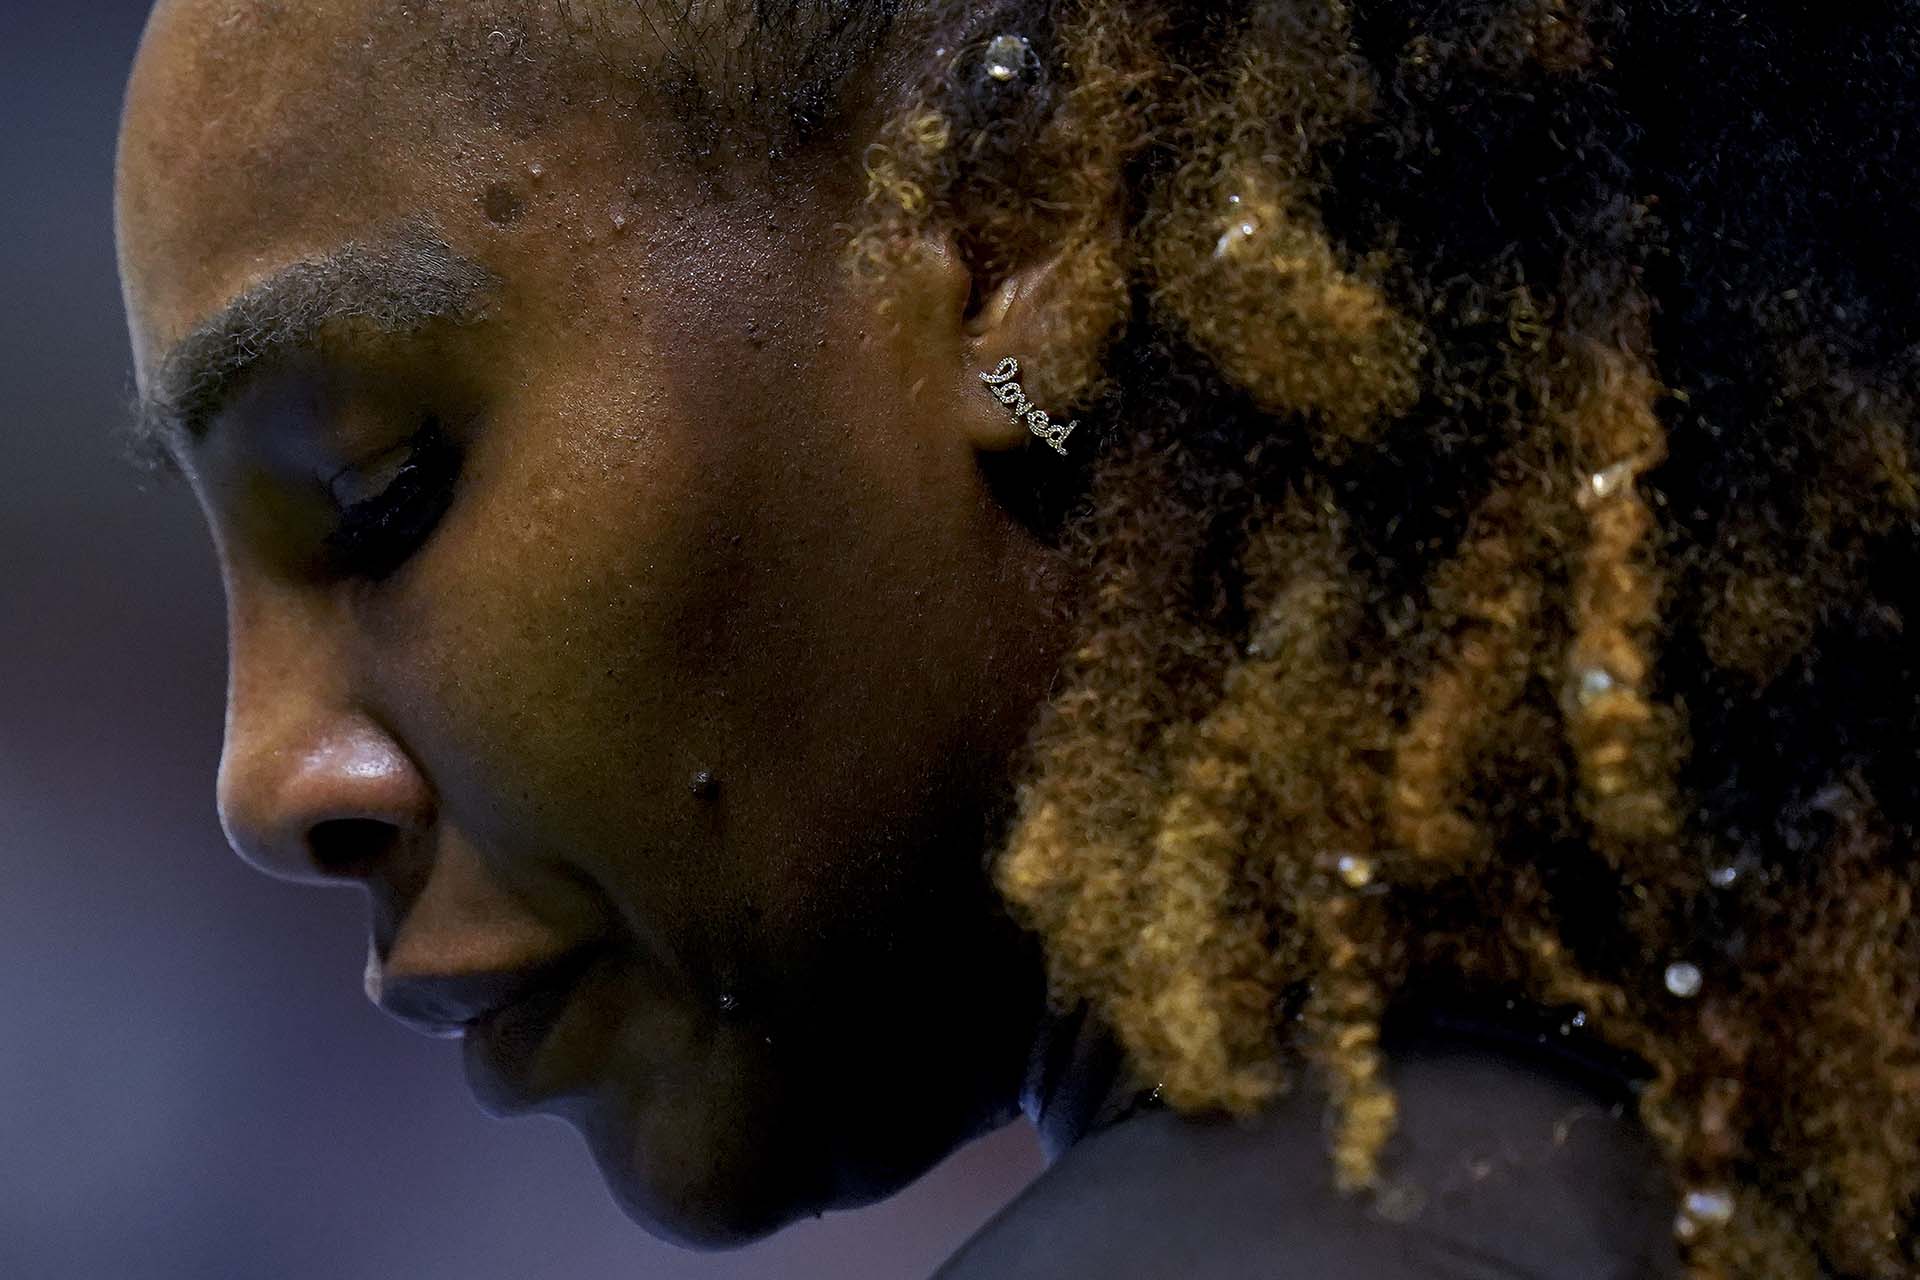 Serena Williams anuncia su retiro del tenis: “Es lo más difícil que podría imaginar”.